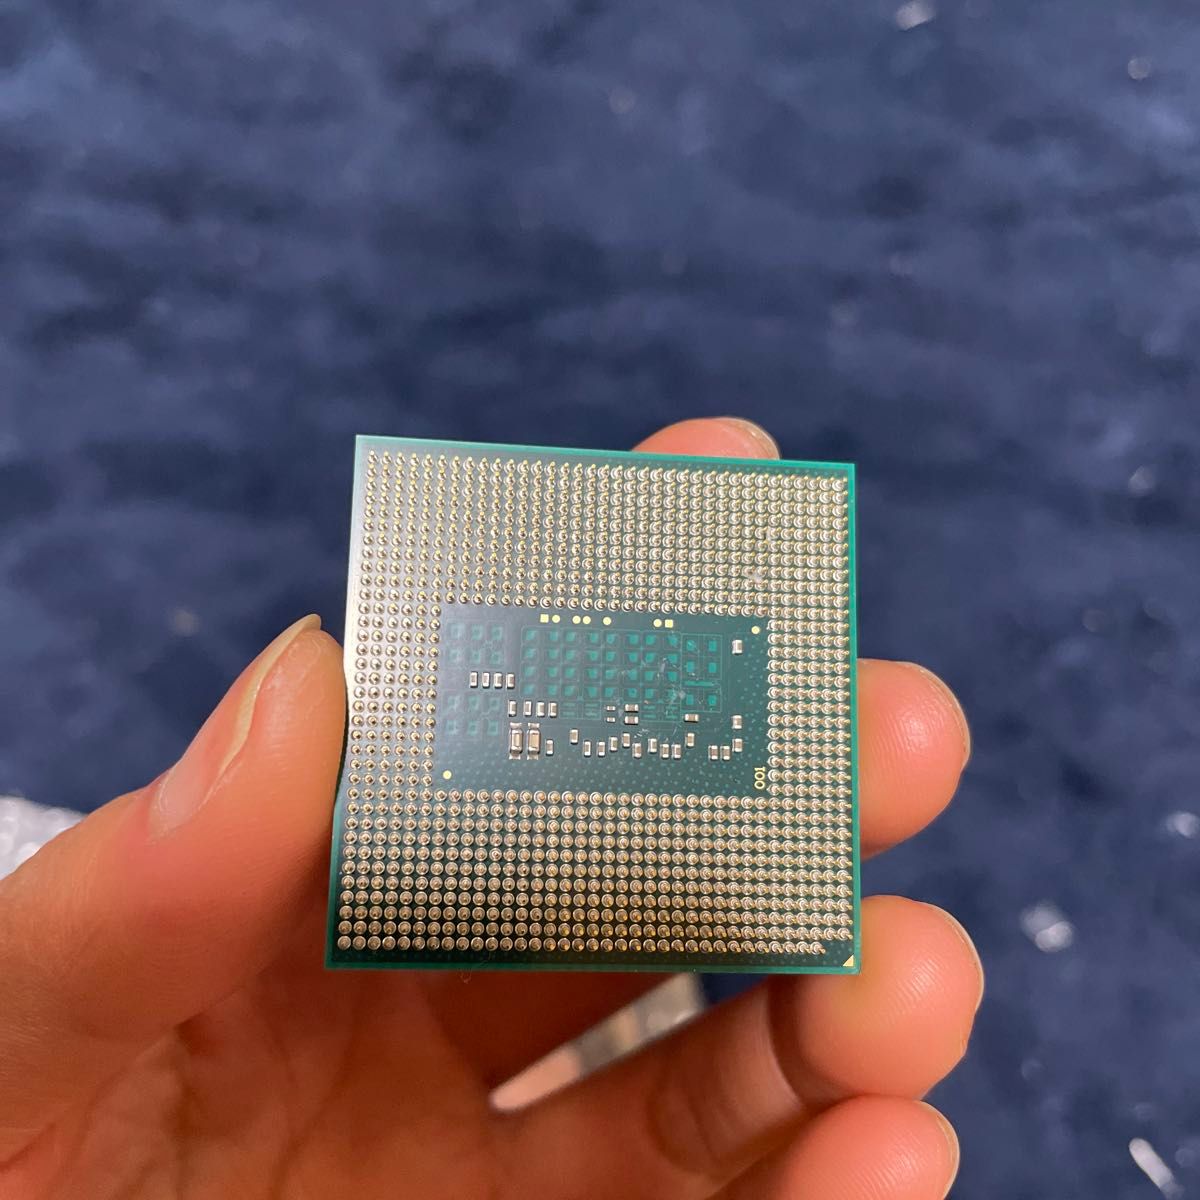 CPU i7 4700